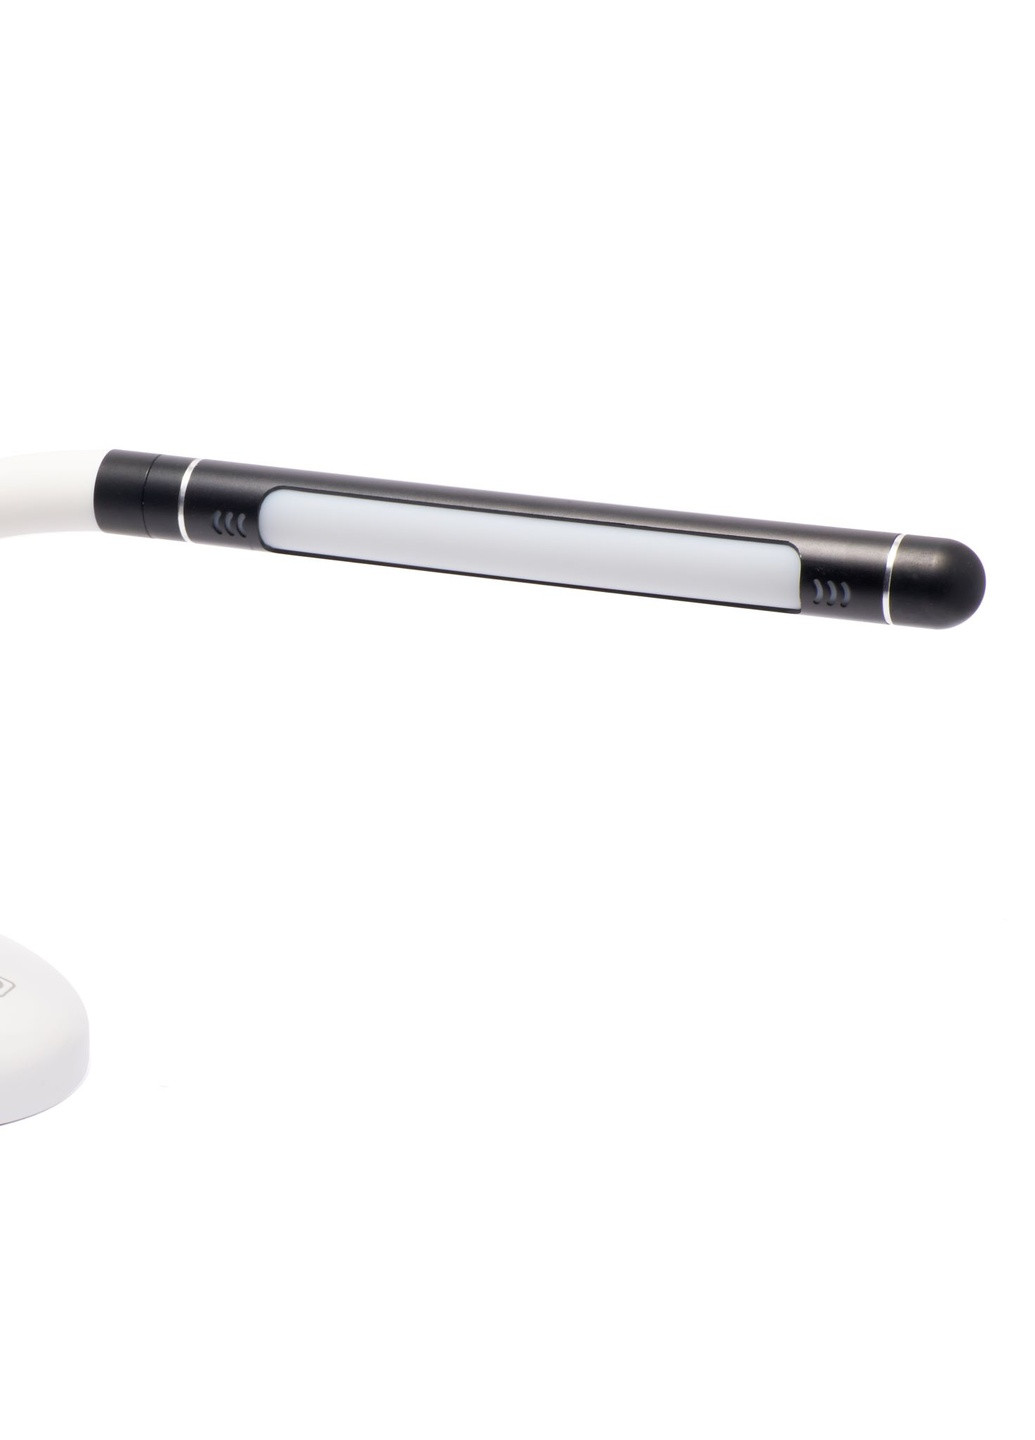 Настольная лампа светодиодная аккумуляторная лампа на гибкой ножке D-24 от сети и аккумулятора бело -черная Led (256550751)